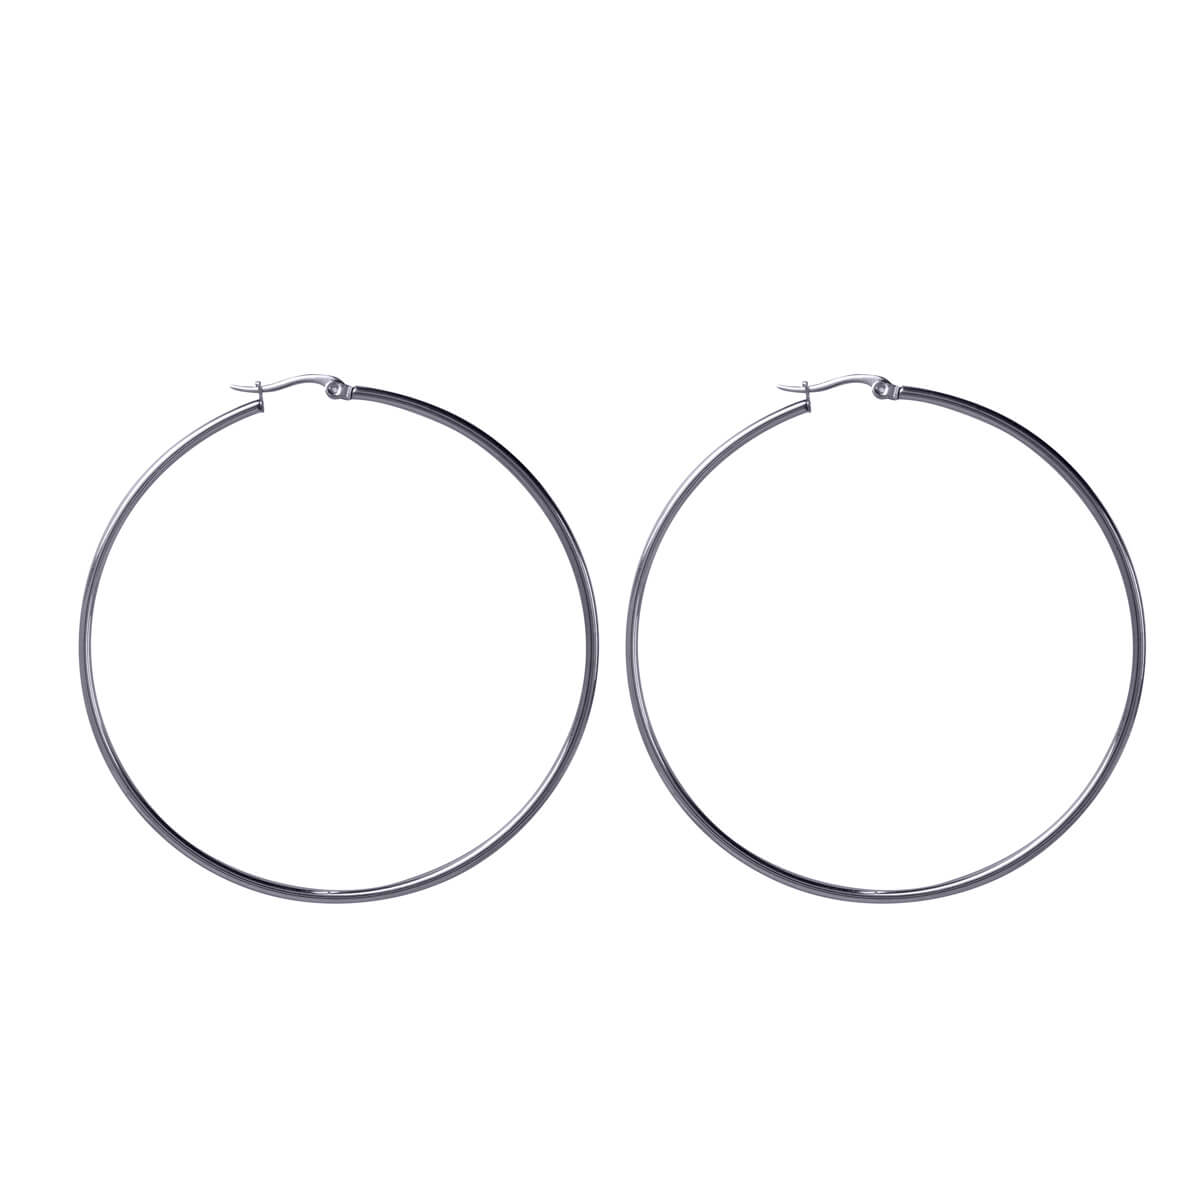 Steel ring earrings 8cm (steel 316L)